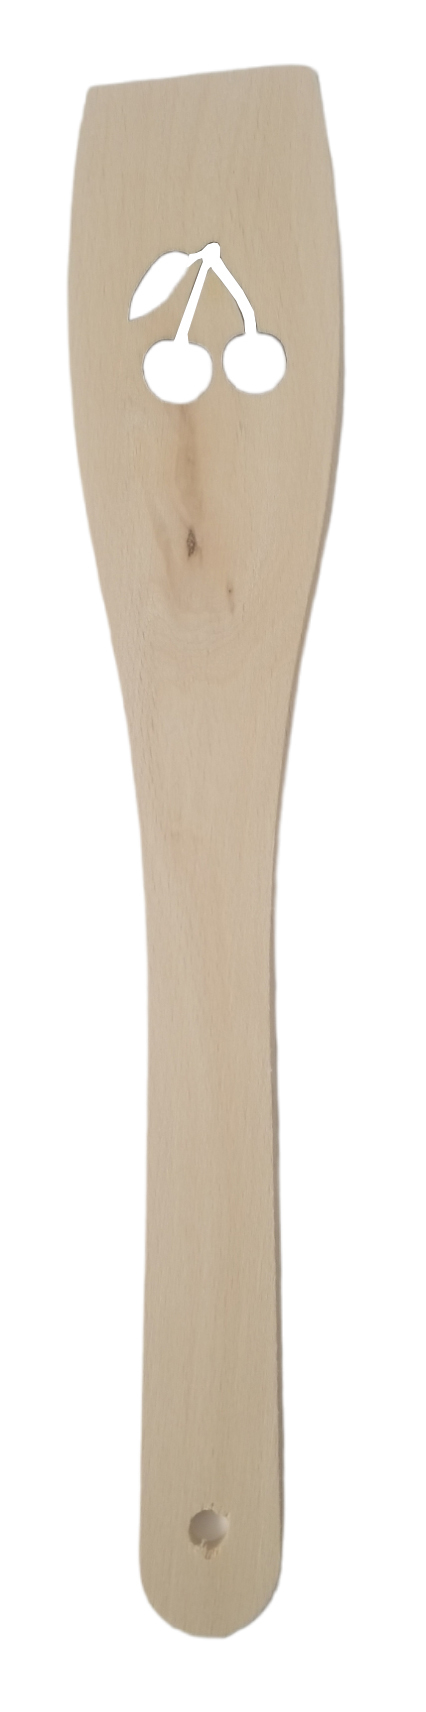 Obracečka dřevěná s motivem 30x6cm - Třešně (12ks/bal)